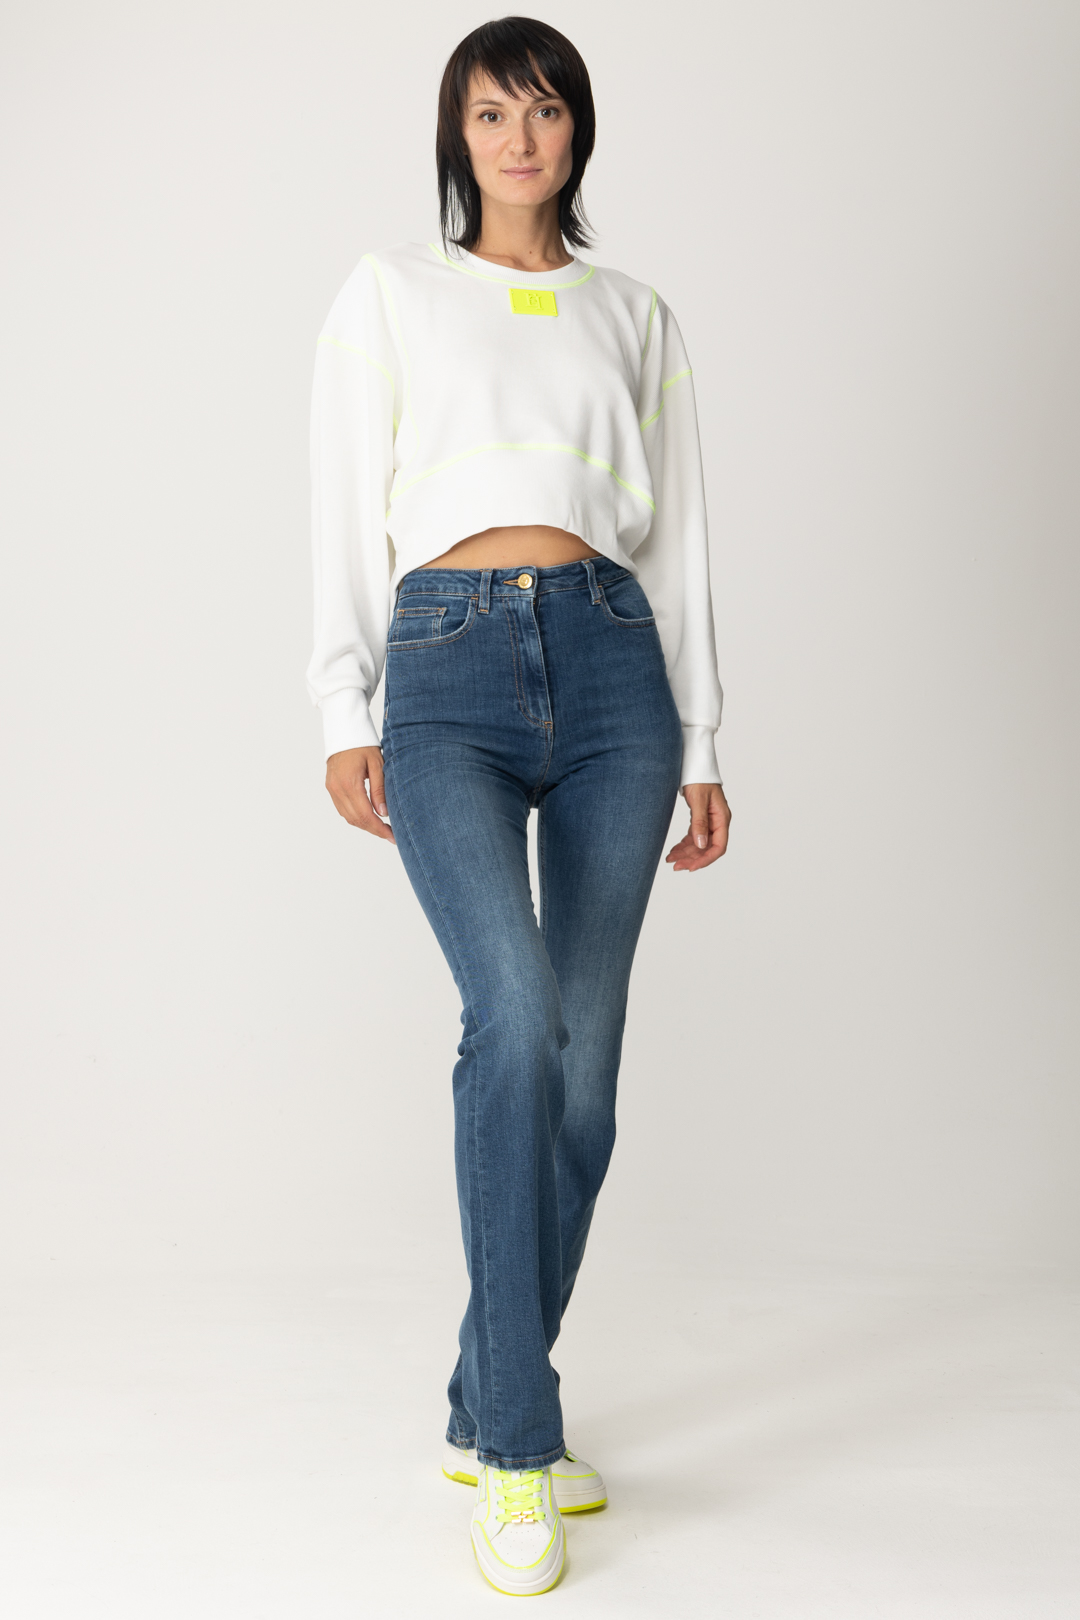 Podgląd: Elisabetta Franchi Krótka bluza z fluorescencyjnymi detalami Avorio